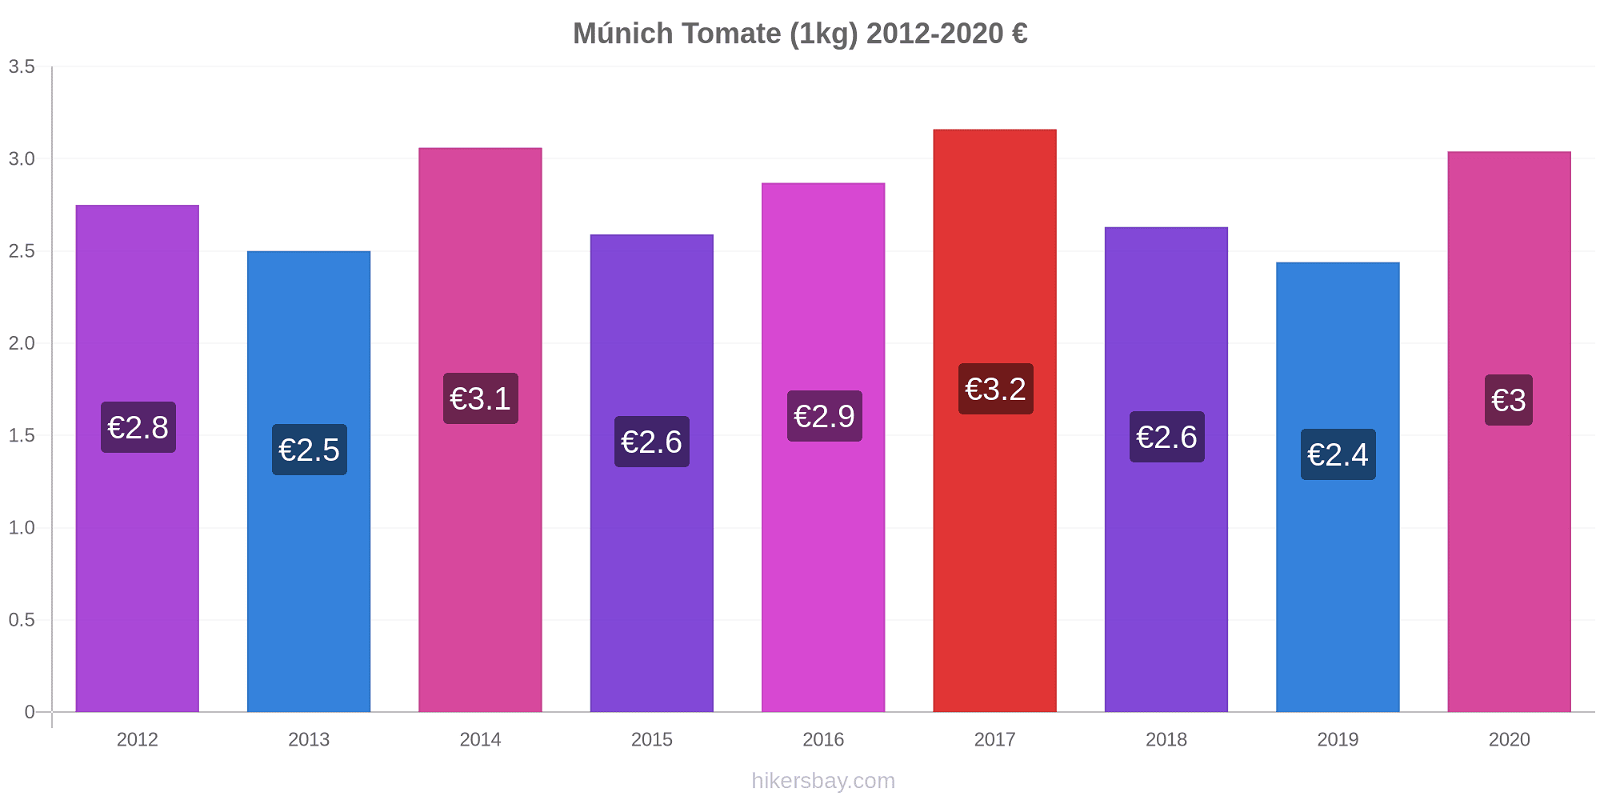 Múnich cambios de precios Tomate (1kg) hikersbay.com